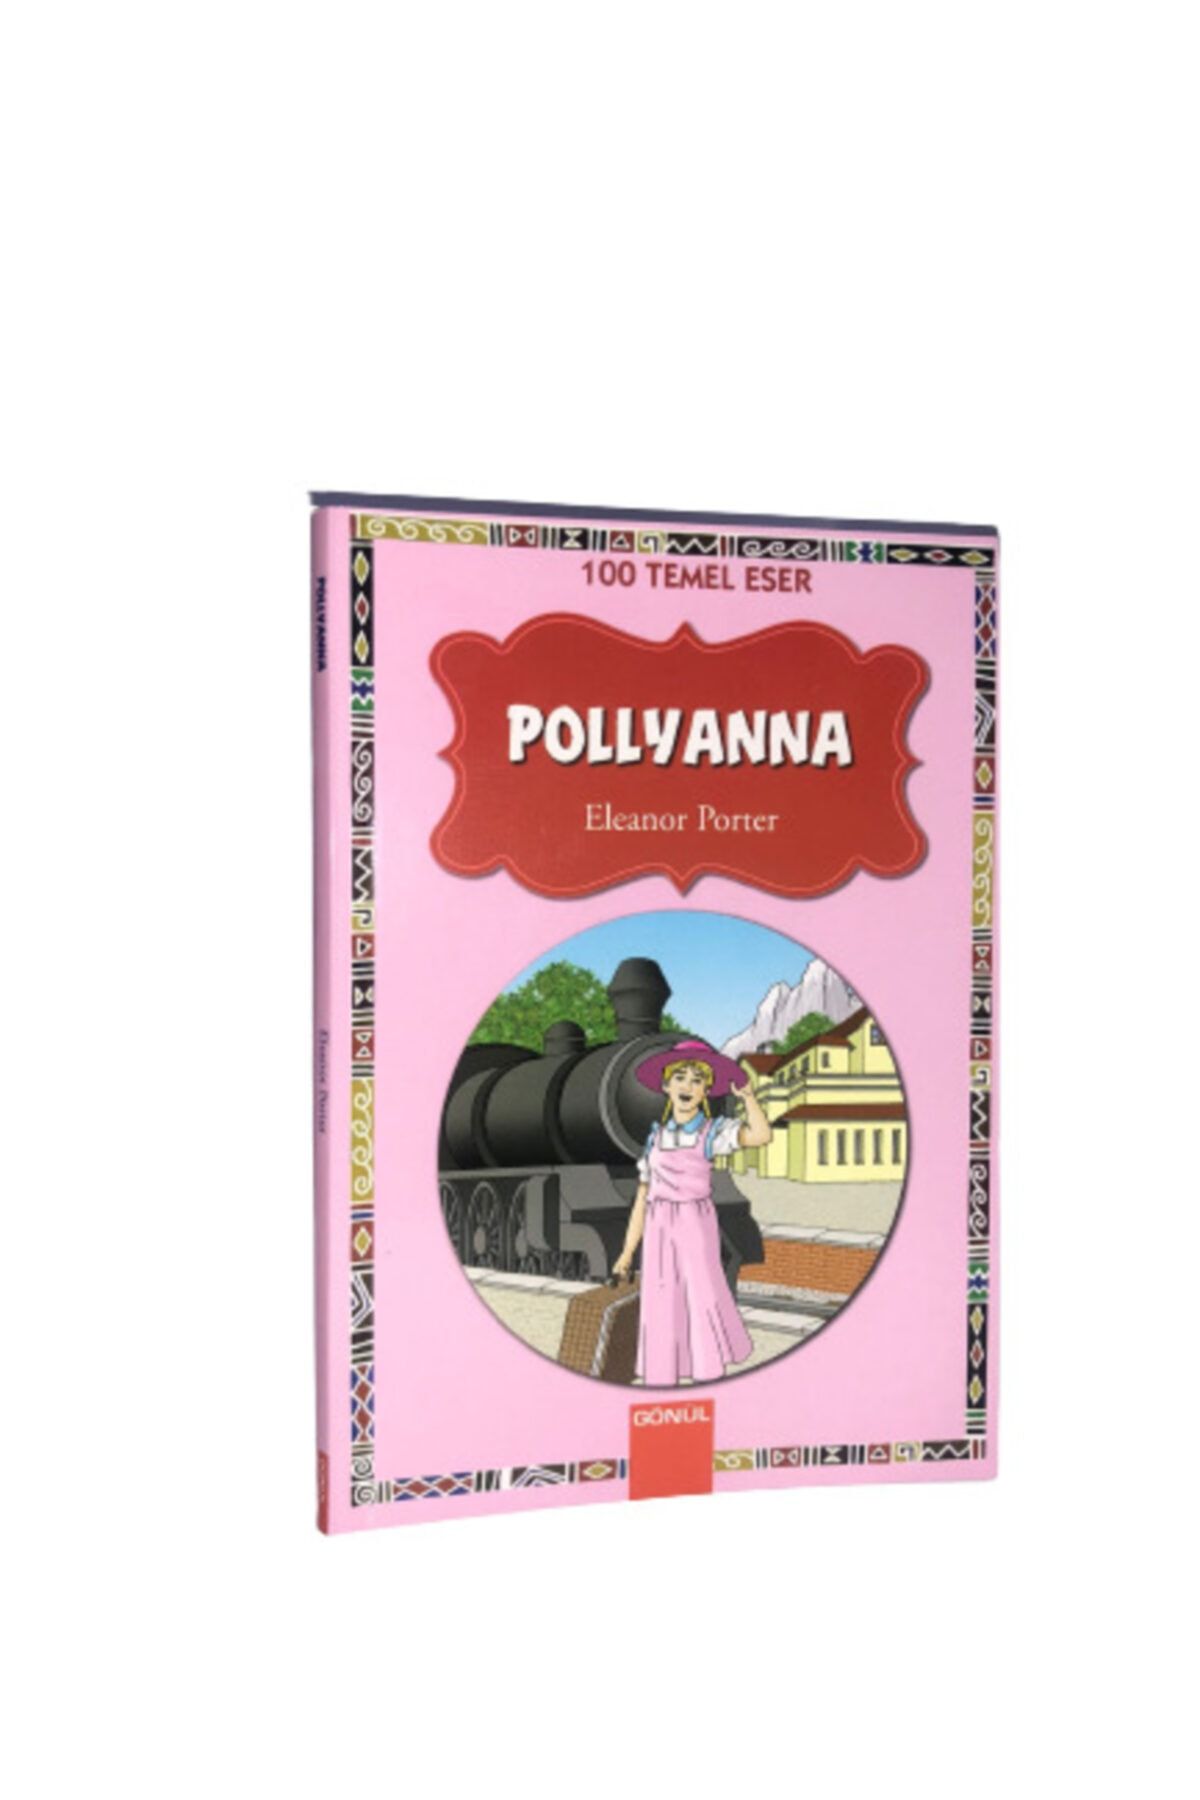 GÖNÜL YAYINCILIK Pollyanna - Eleanor Porter 100 Temel Eser